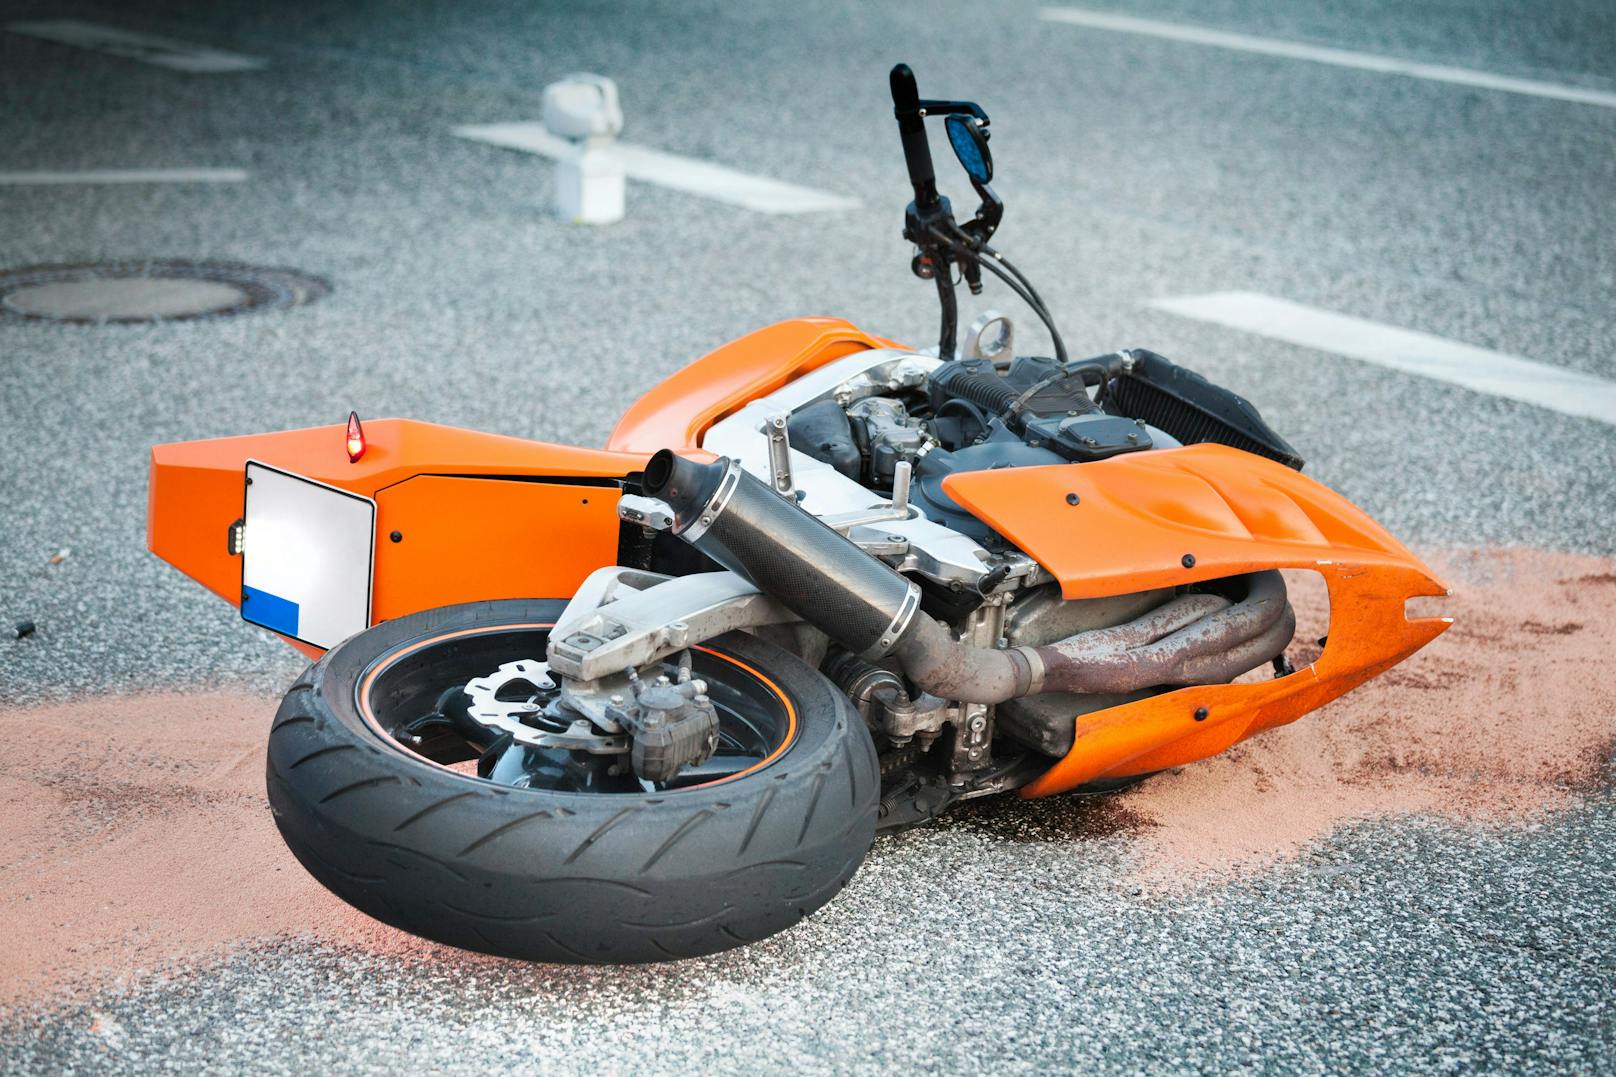 Amerikaner stirbt bei Motorrad-Crash in Kärnten